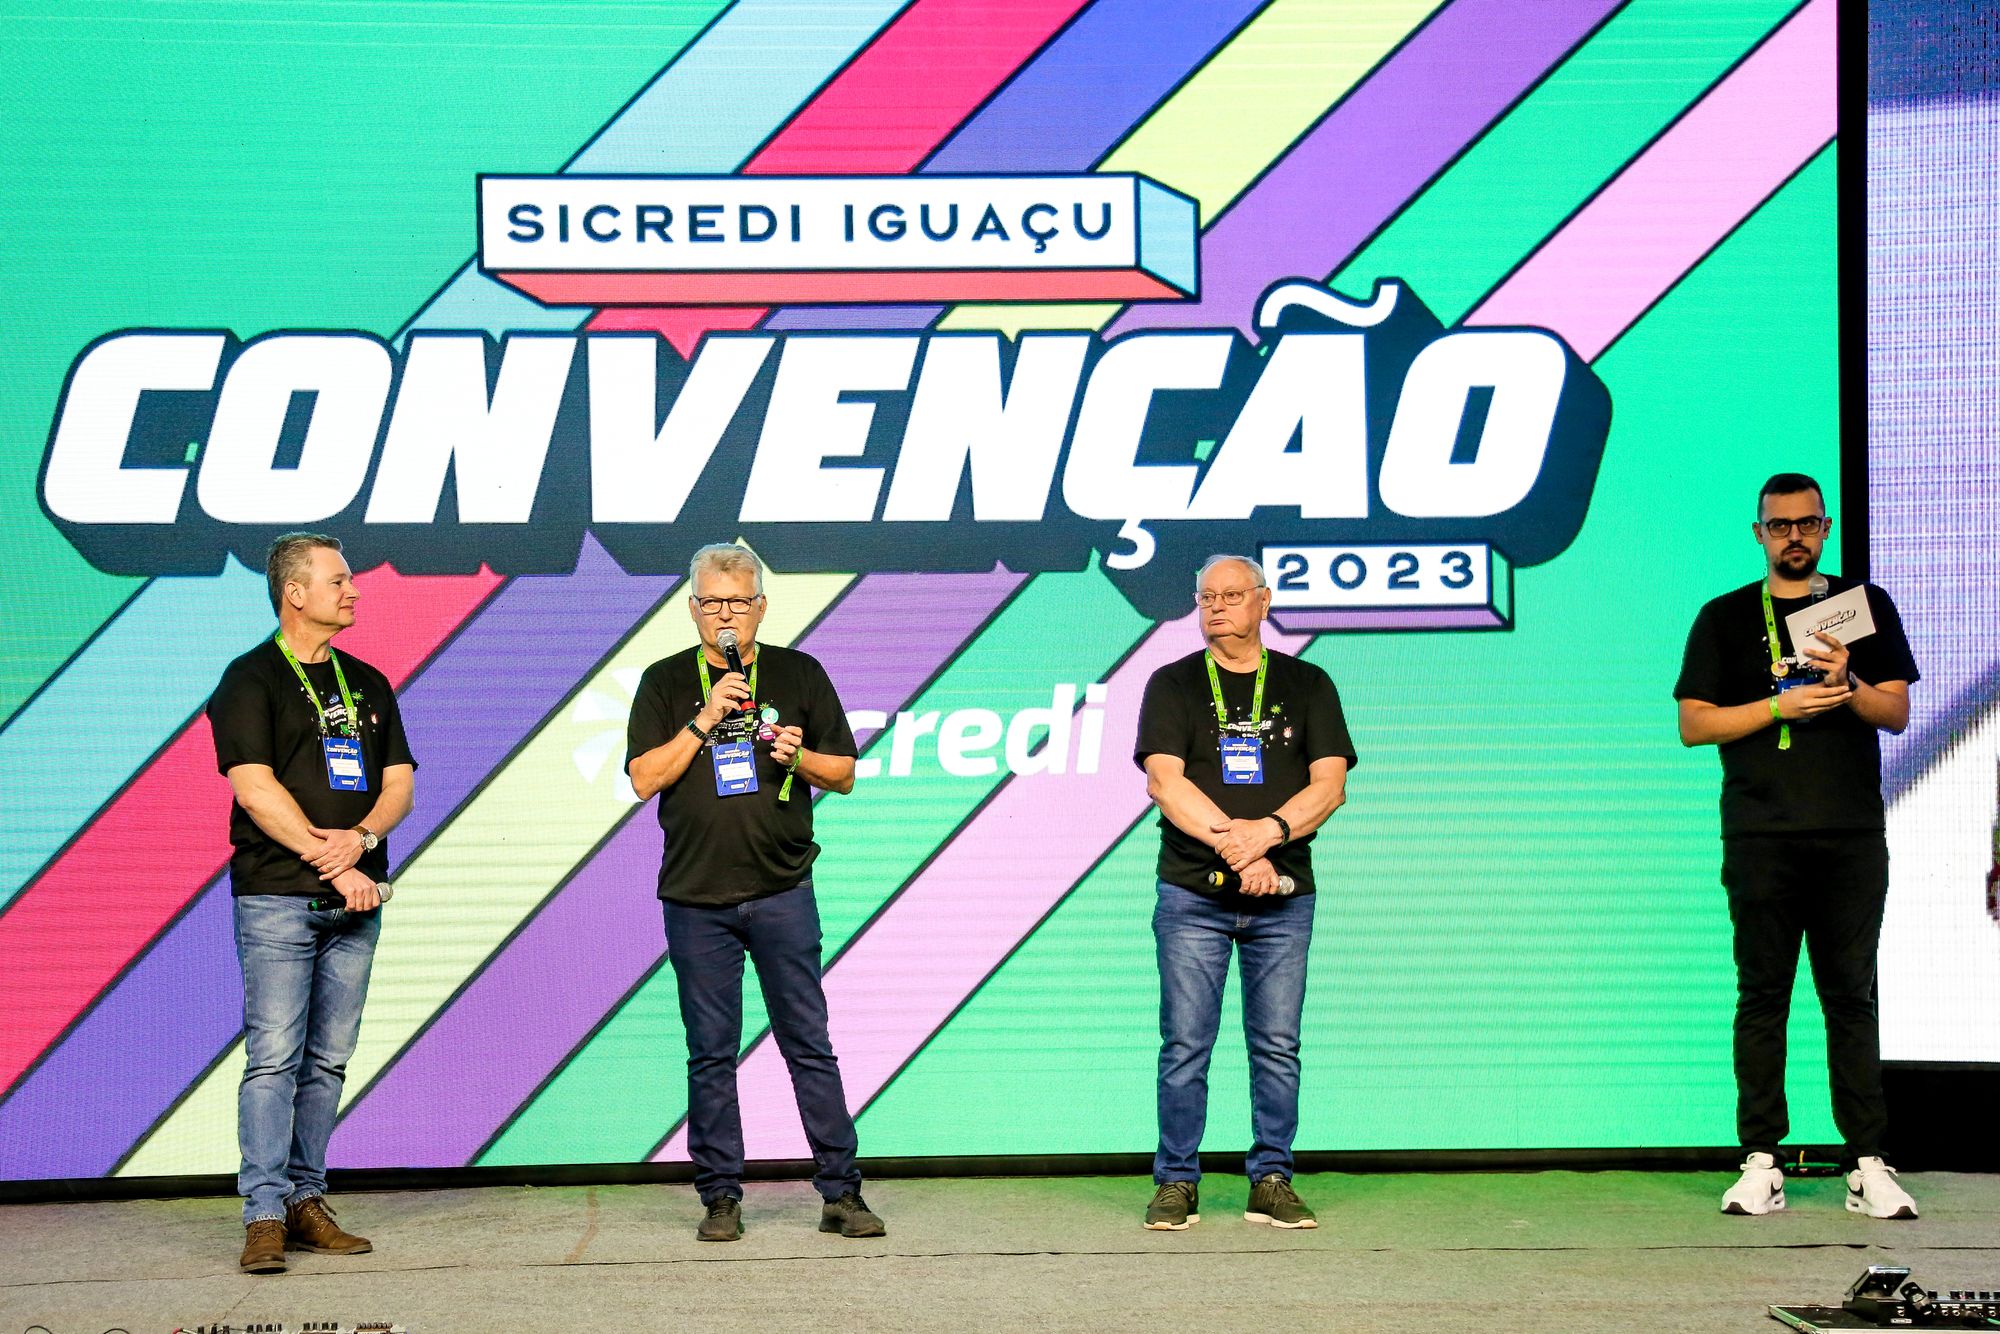 Convenção anual da Sicredi Iguaçu PR/SC/SP promove reflexões sobre criatividade e liderança